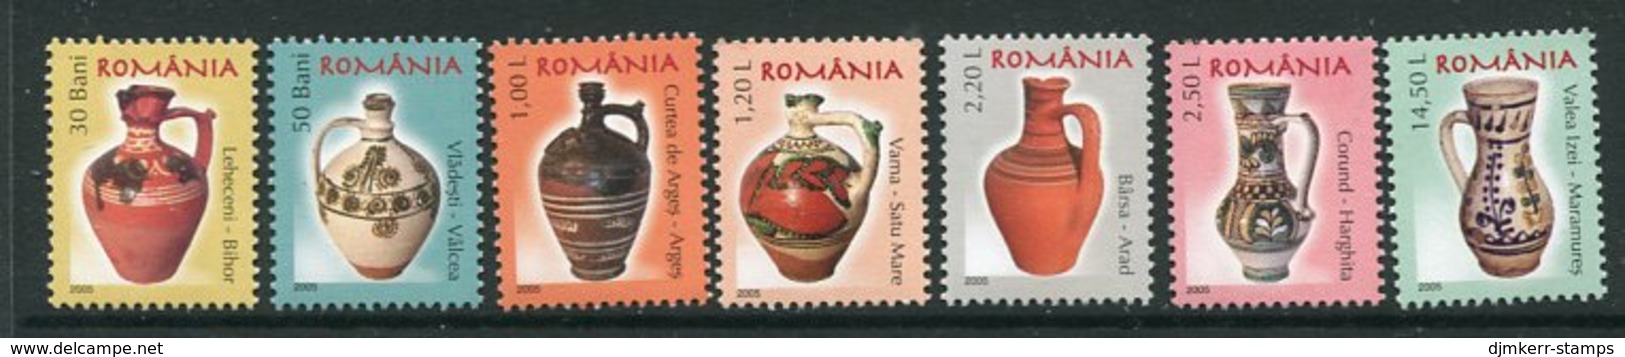 ROMANIA 2005 Ceramics Definitive (7) MNH / **.  Michel 6006-12 - Nuovi